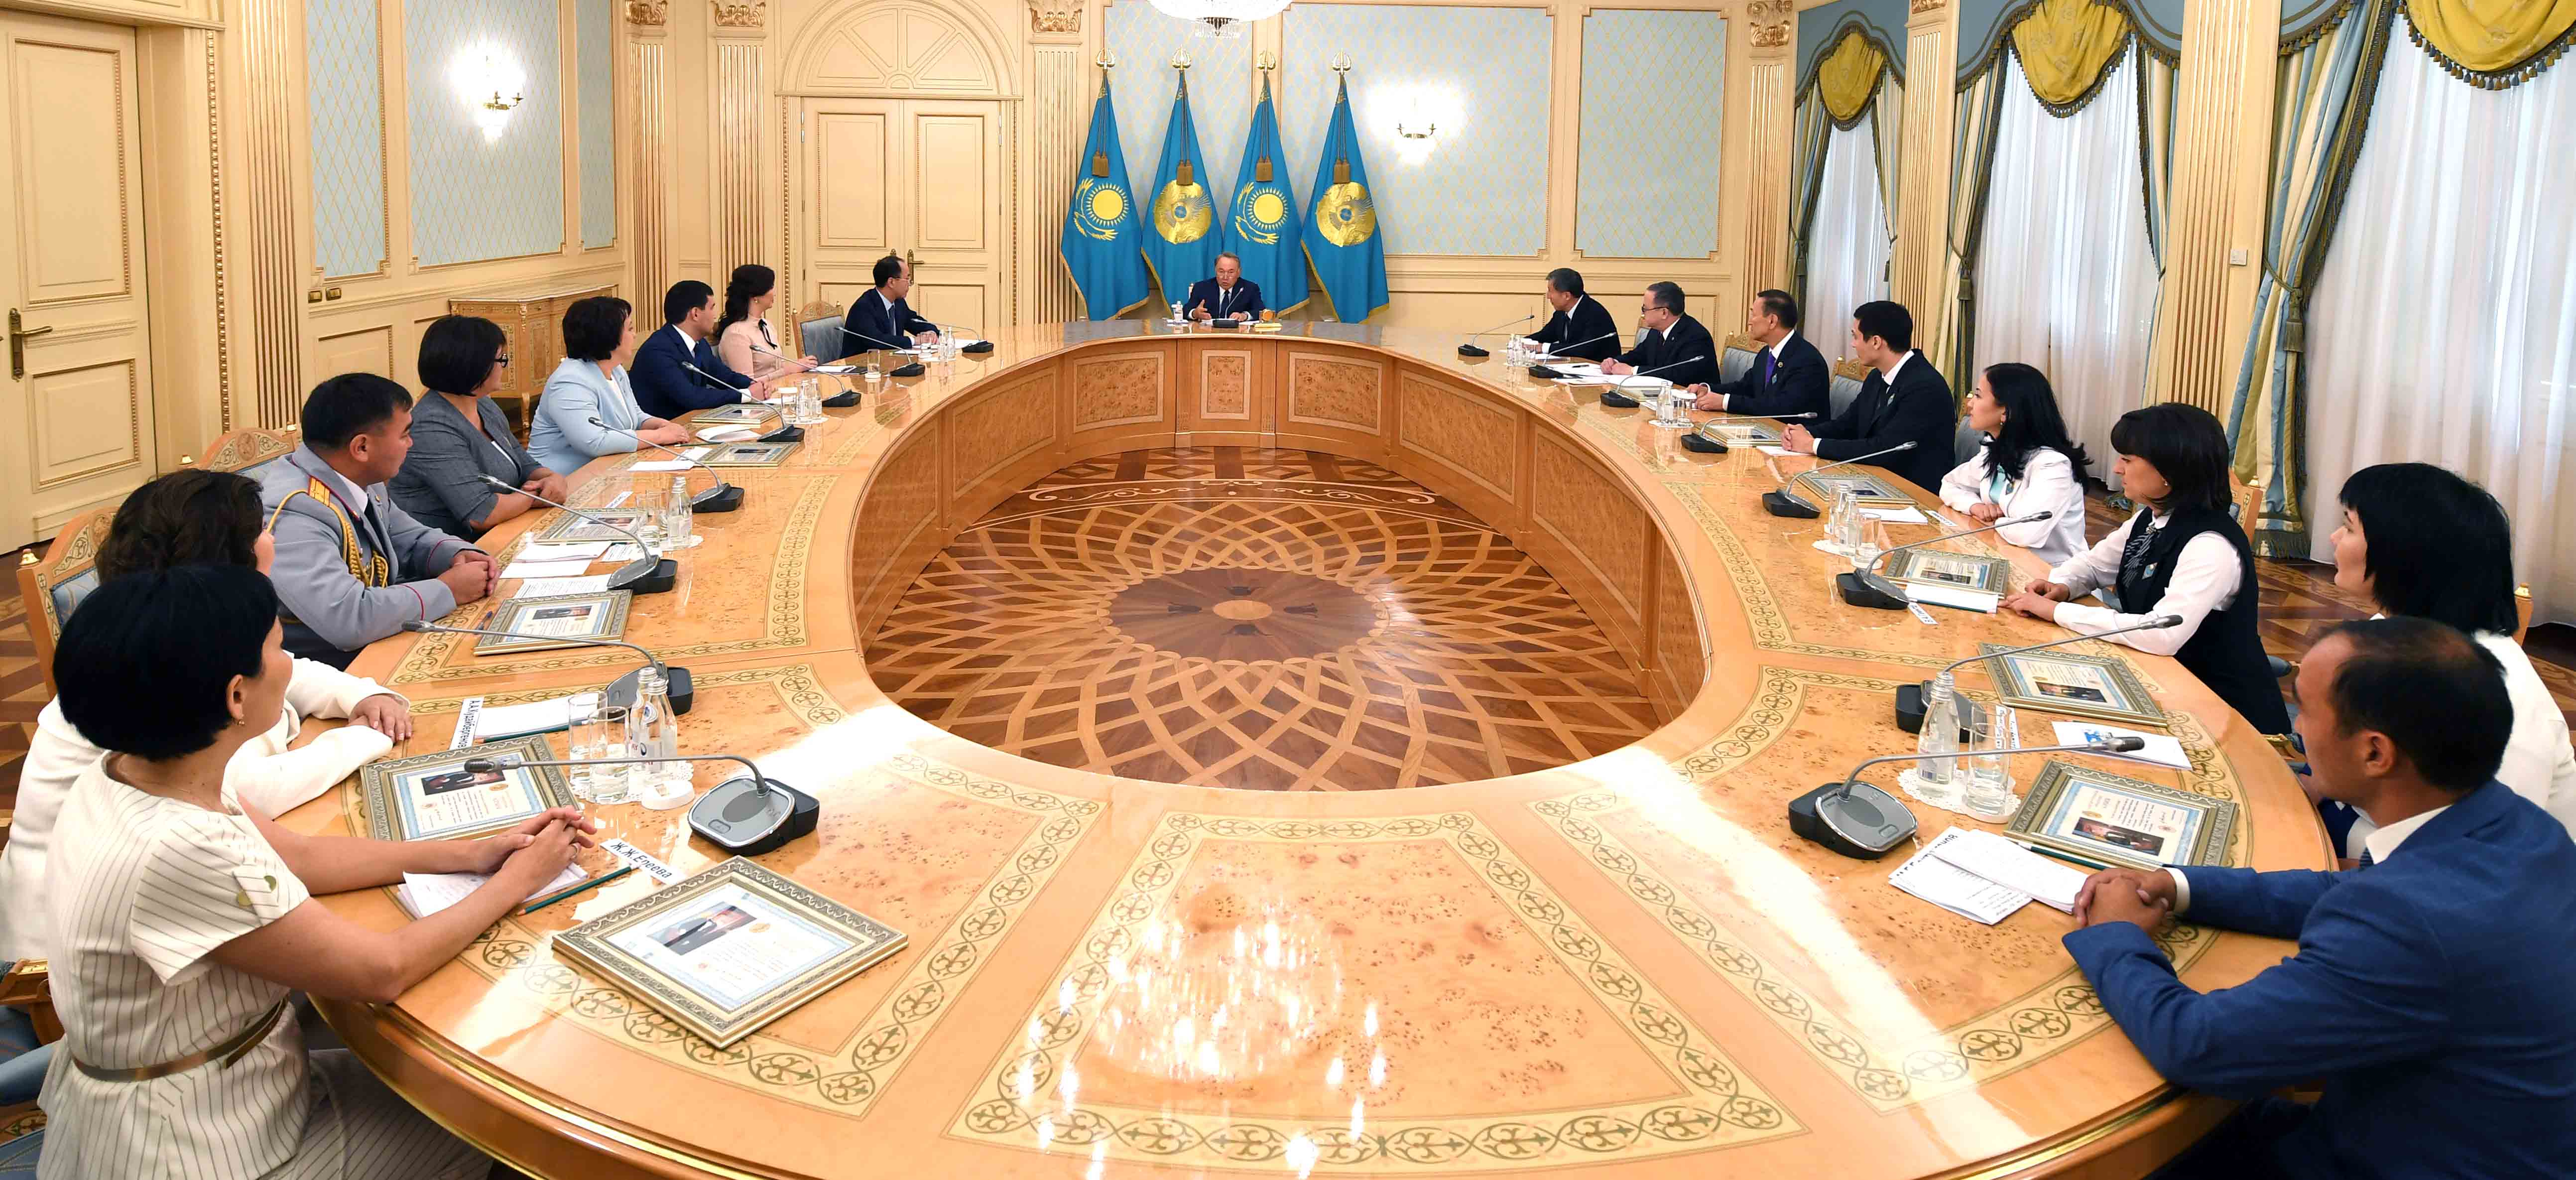 Нурсултан Назарбаев: Без создания конкурентоспособной государственной службы невозможно построение процветающего Казахстана